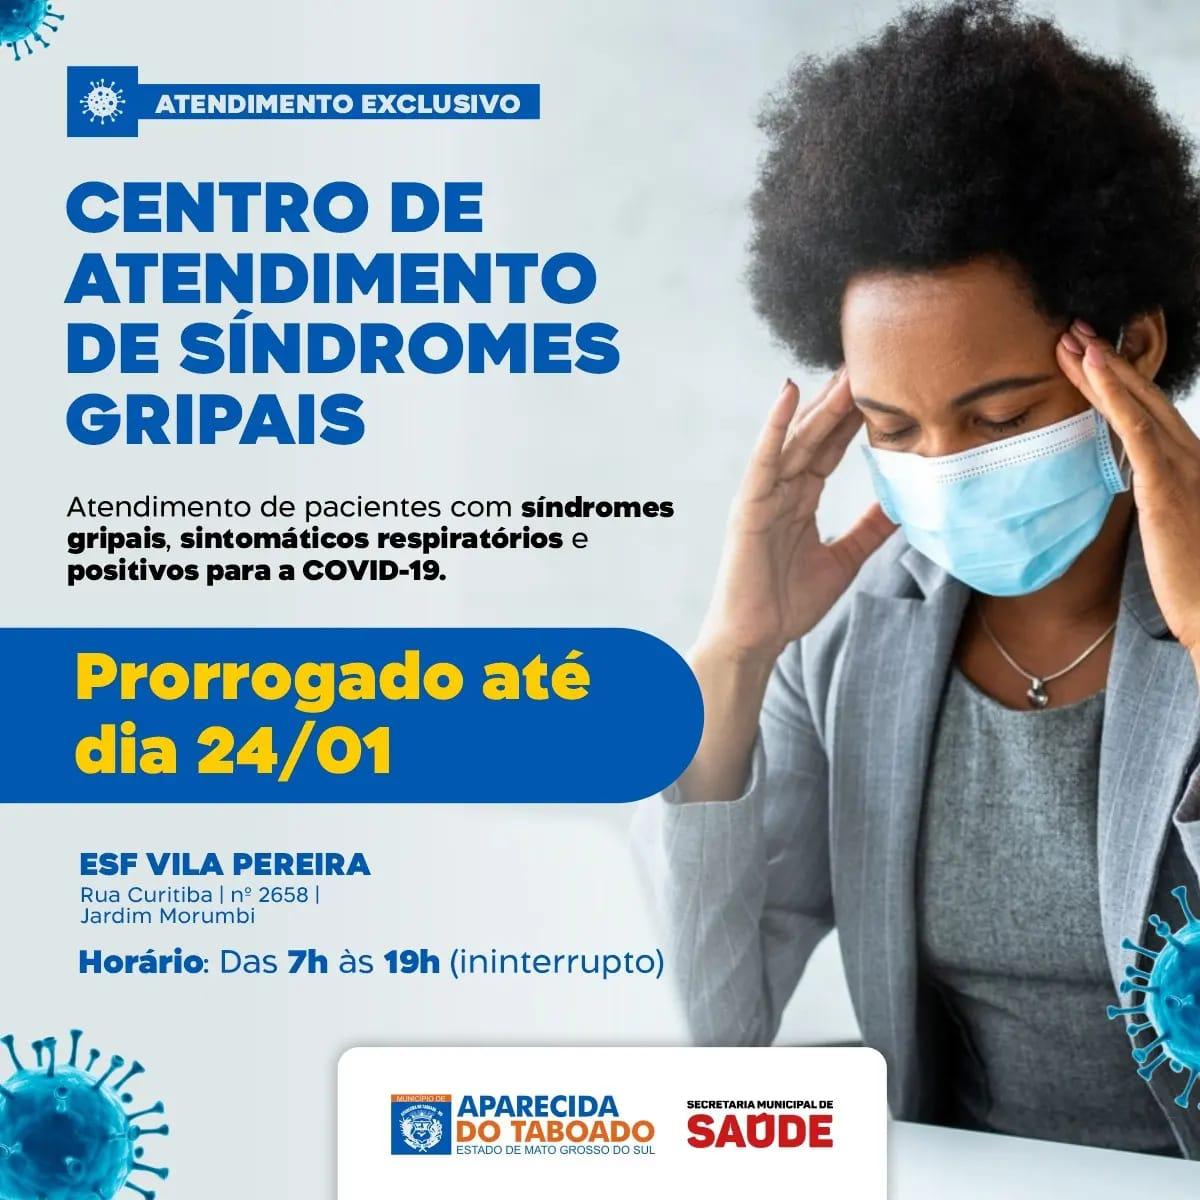 ESF Vila Pereira atenderá somente pacientes com síndromes gripais até o dia 24